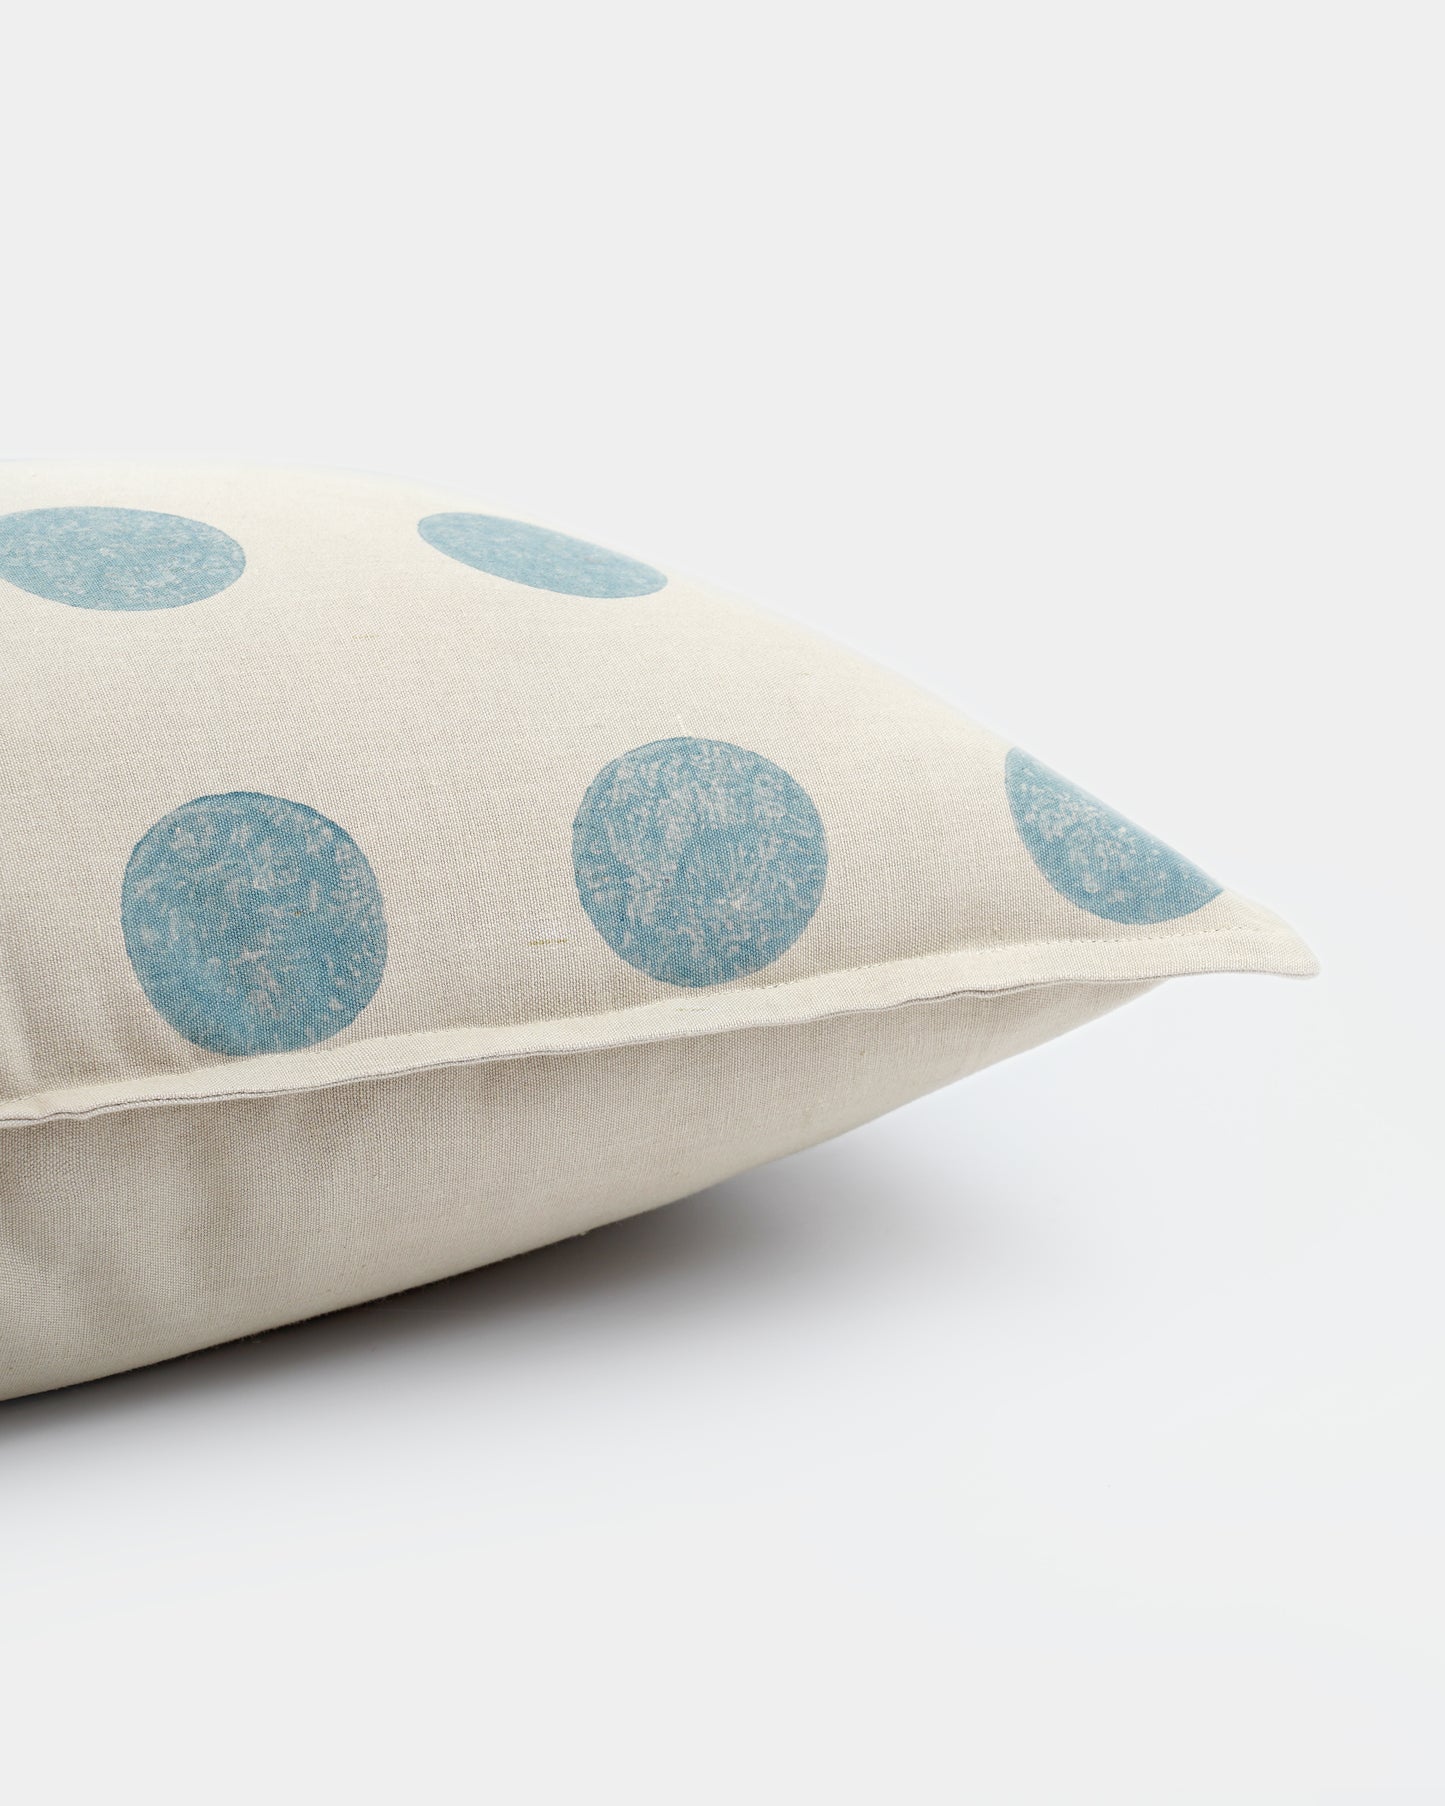 Moon Lumbar Cushion Cover, Blue (14” X 20”)